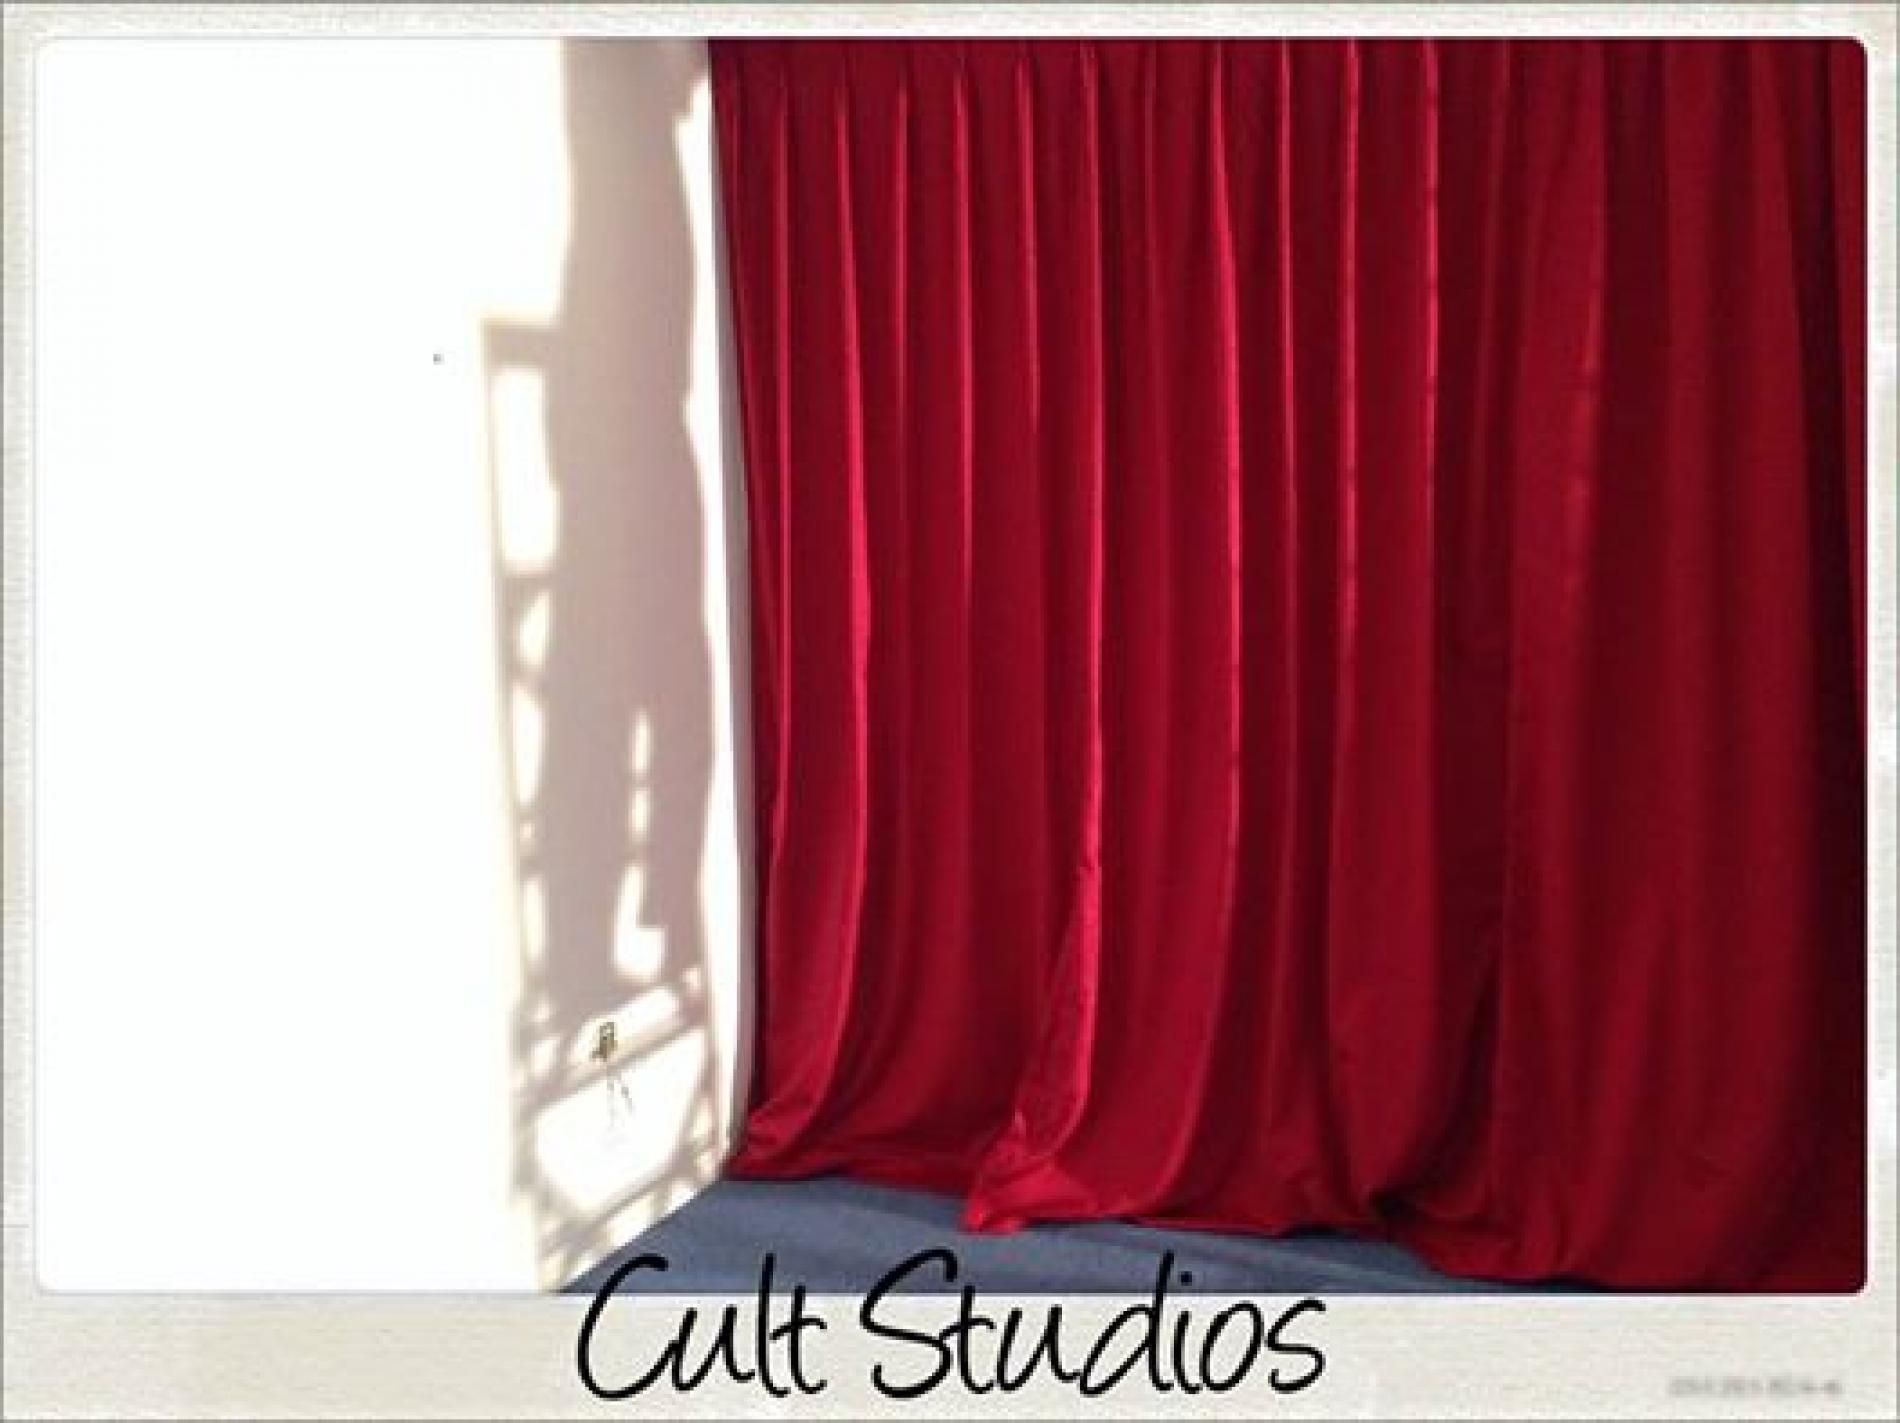 Cult Studios Just Got Bigger!